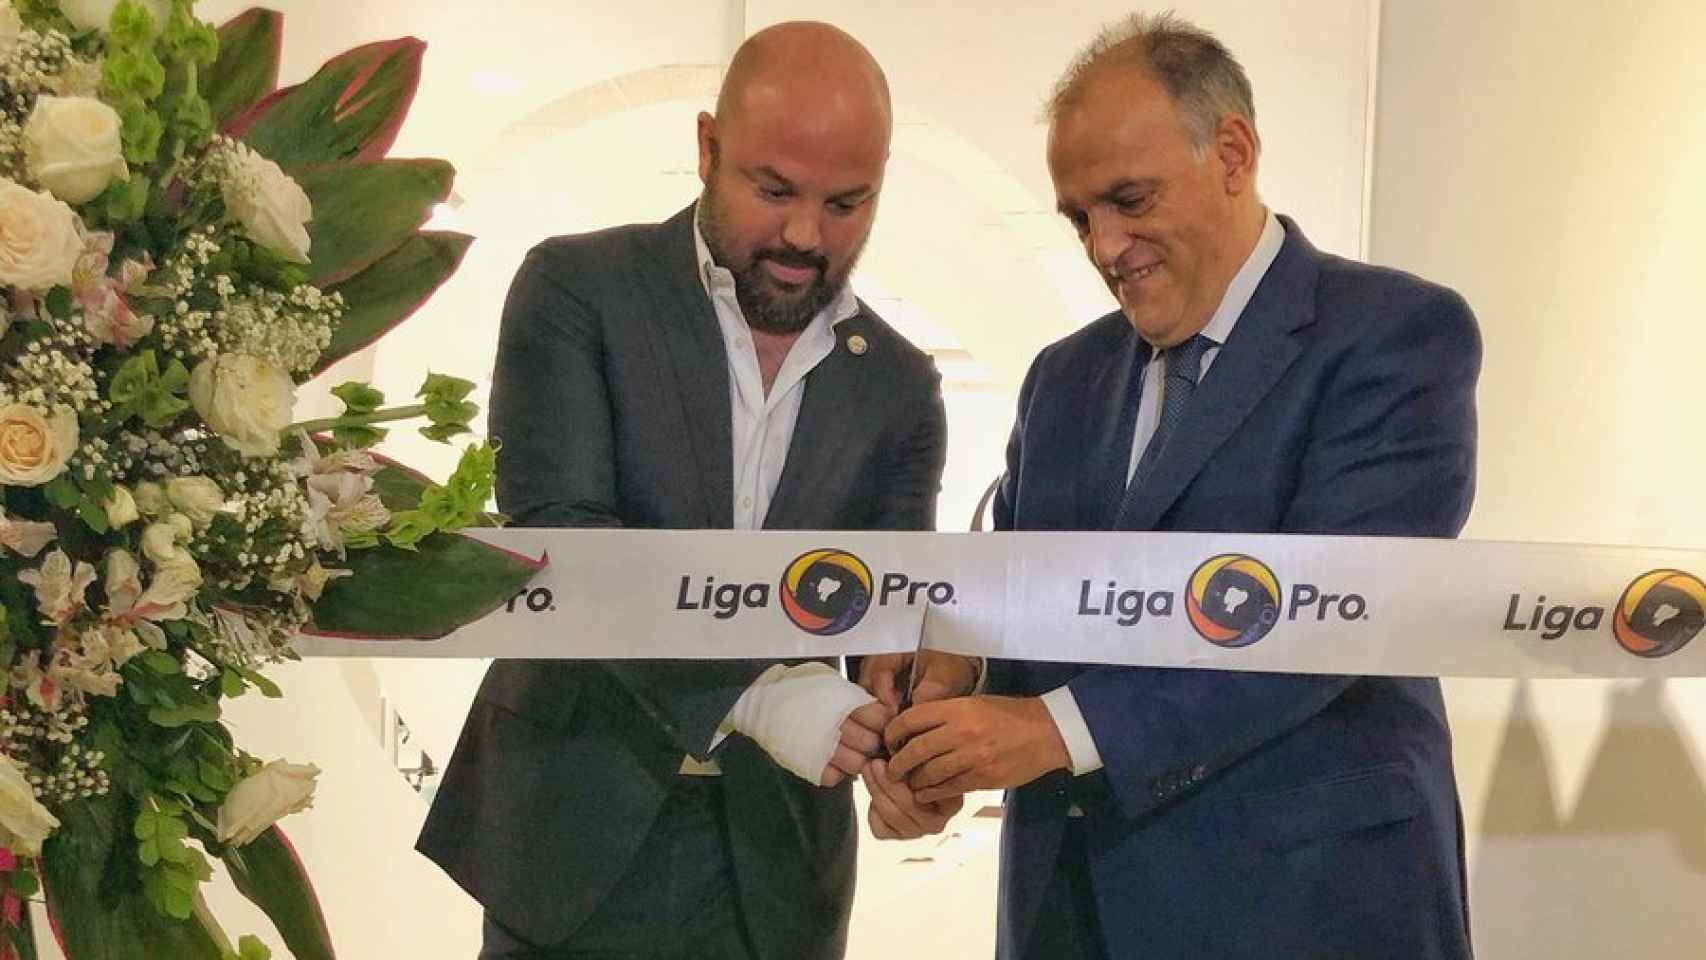 Miguel Ángel Loor, presidente de la Liga Profesional de Fútbol de Ecuador, y Javier Tebas, presidente de La Liga. Foto: Twitter (@LigaProEC)